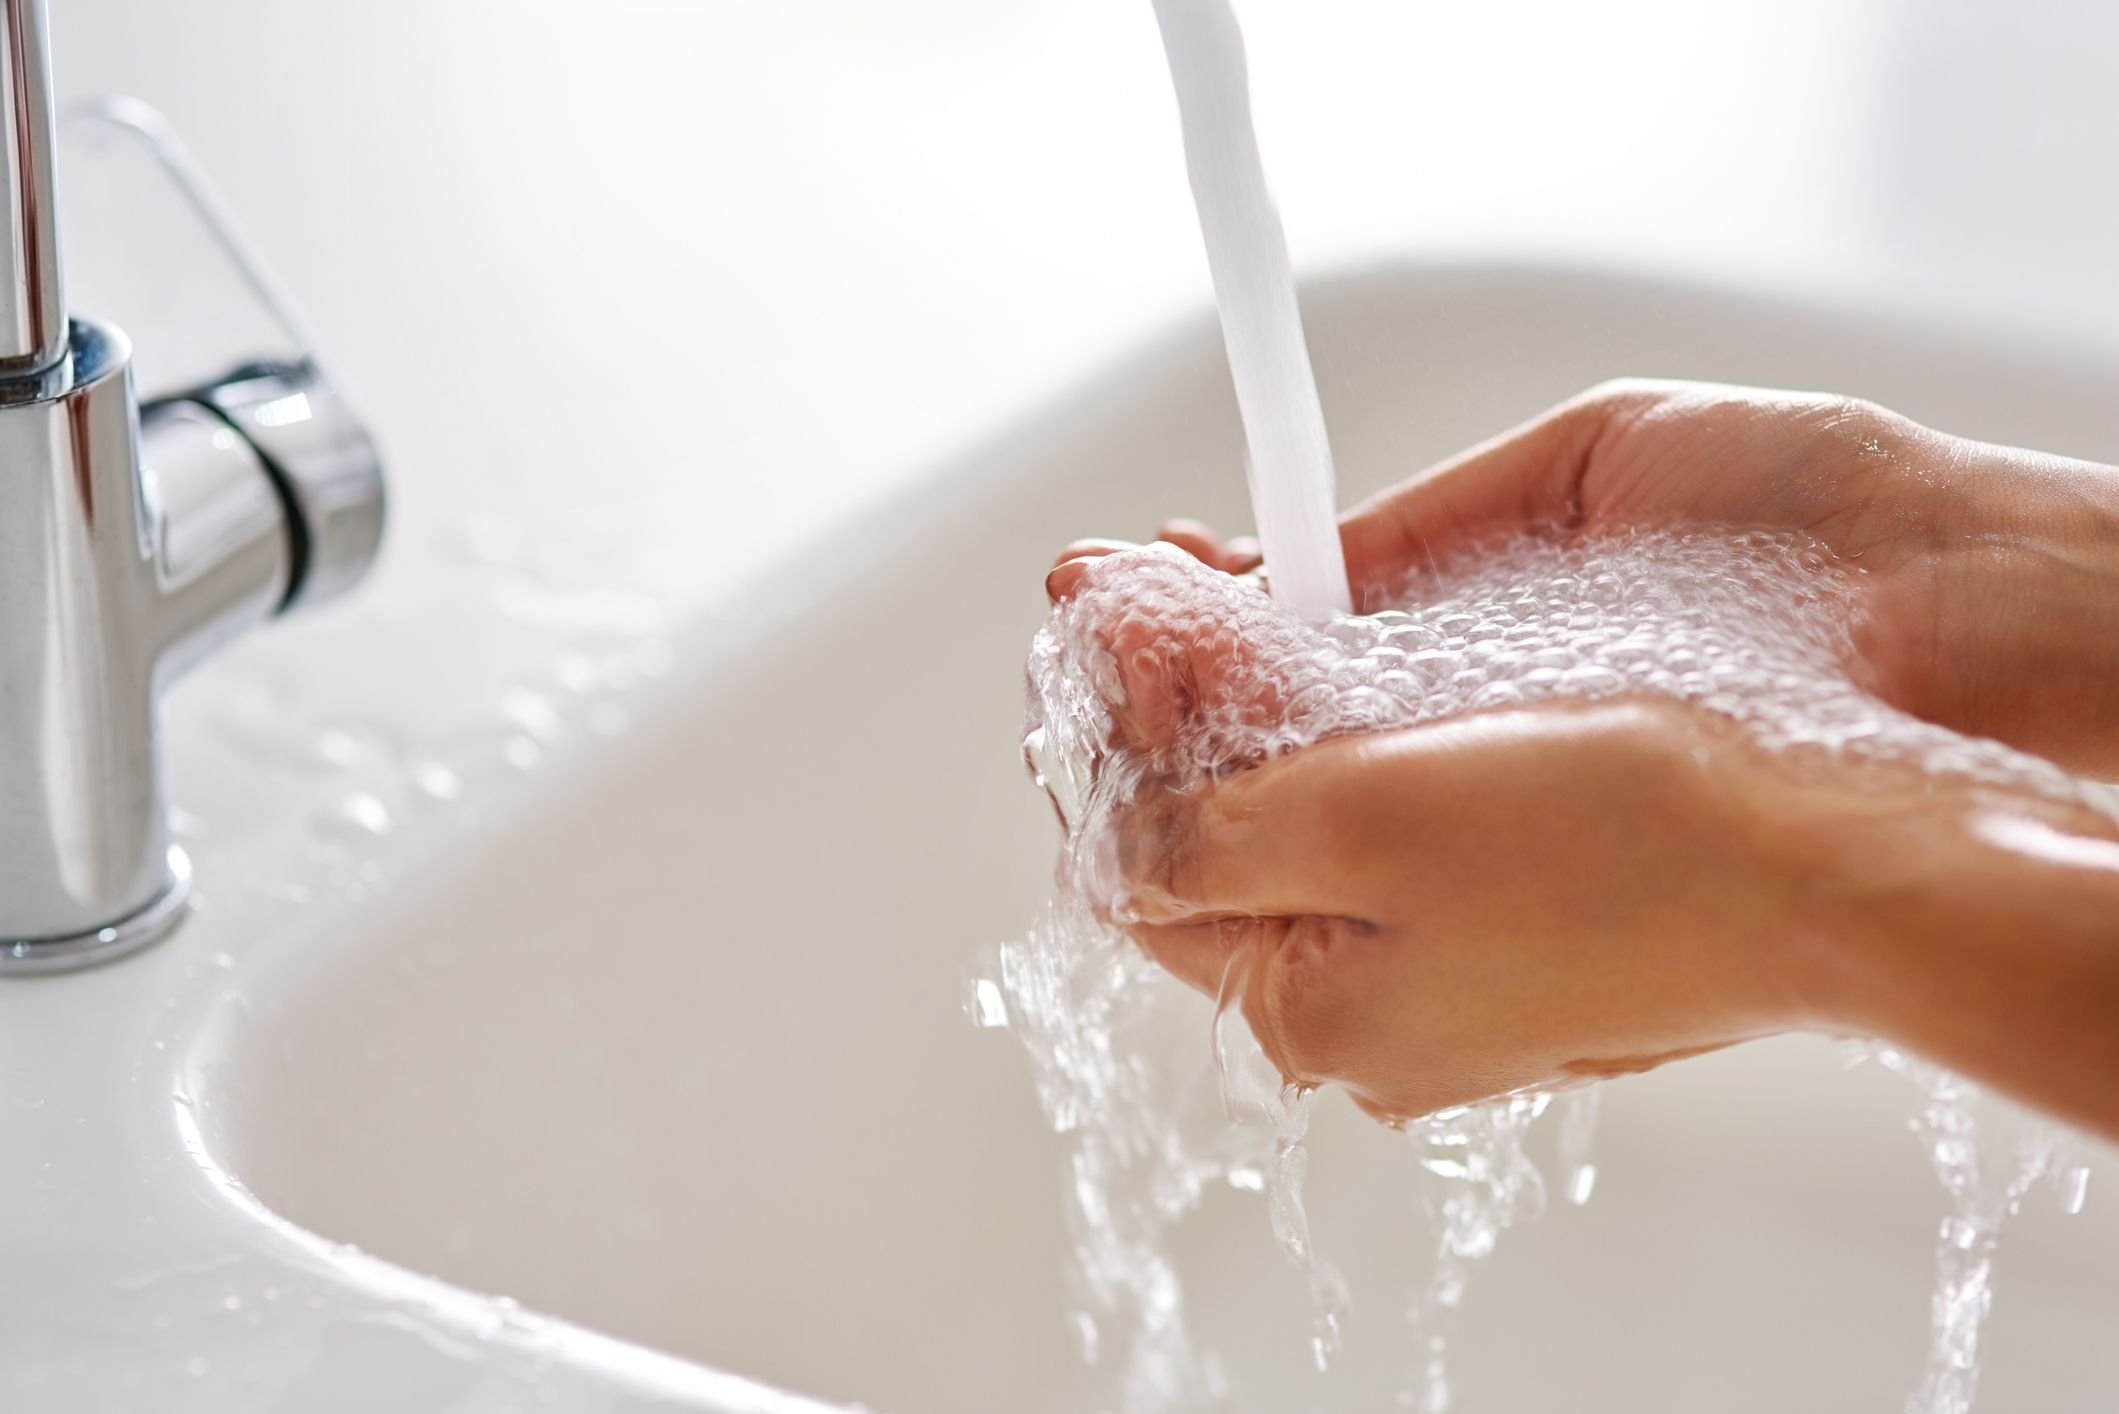 Вода на горячей поверхности. Руки под краном с водой. Мытье рук картинки. Мытье рук под краном. Кран с водой.